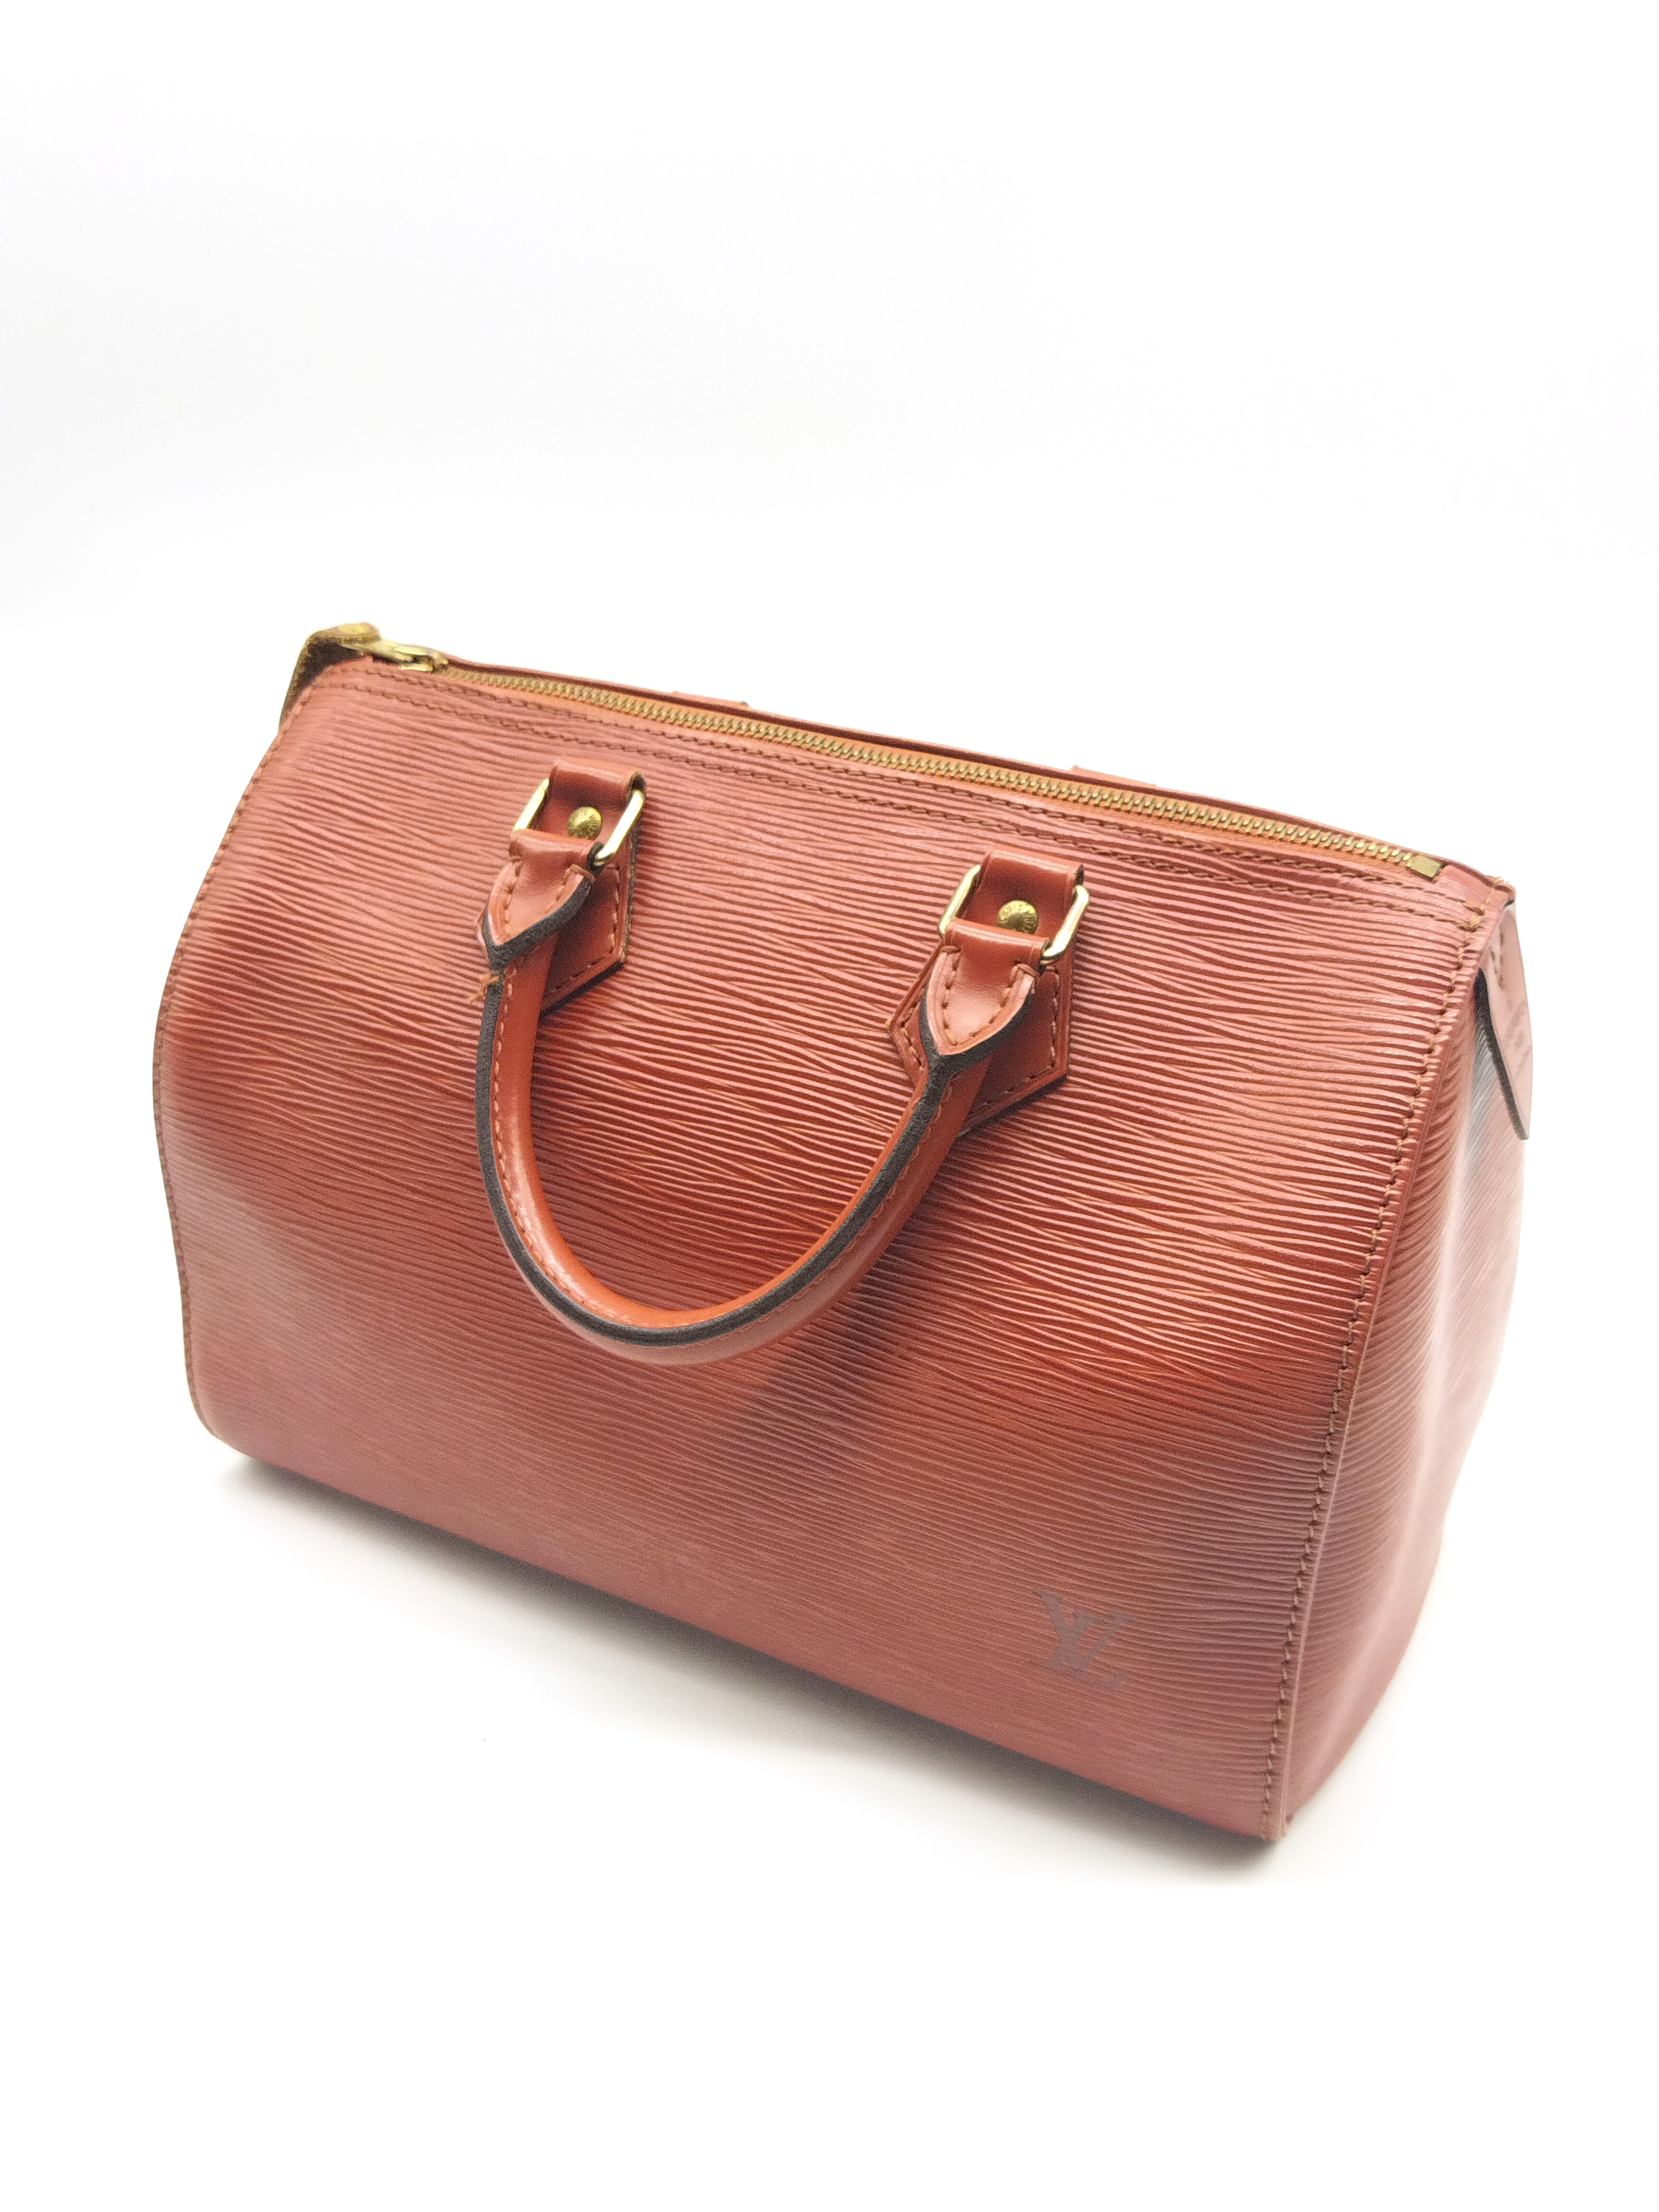 Louis Vuitton Sirius 45 Epi Leather Suitcase